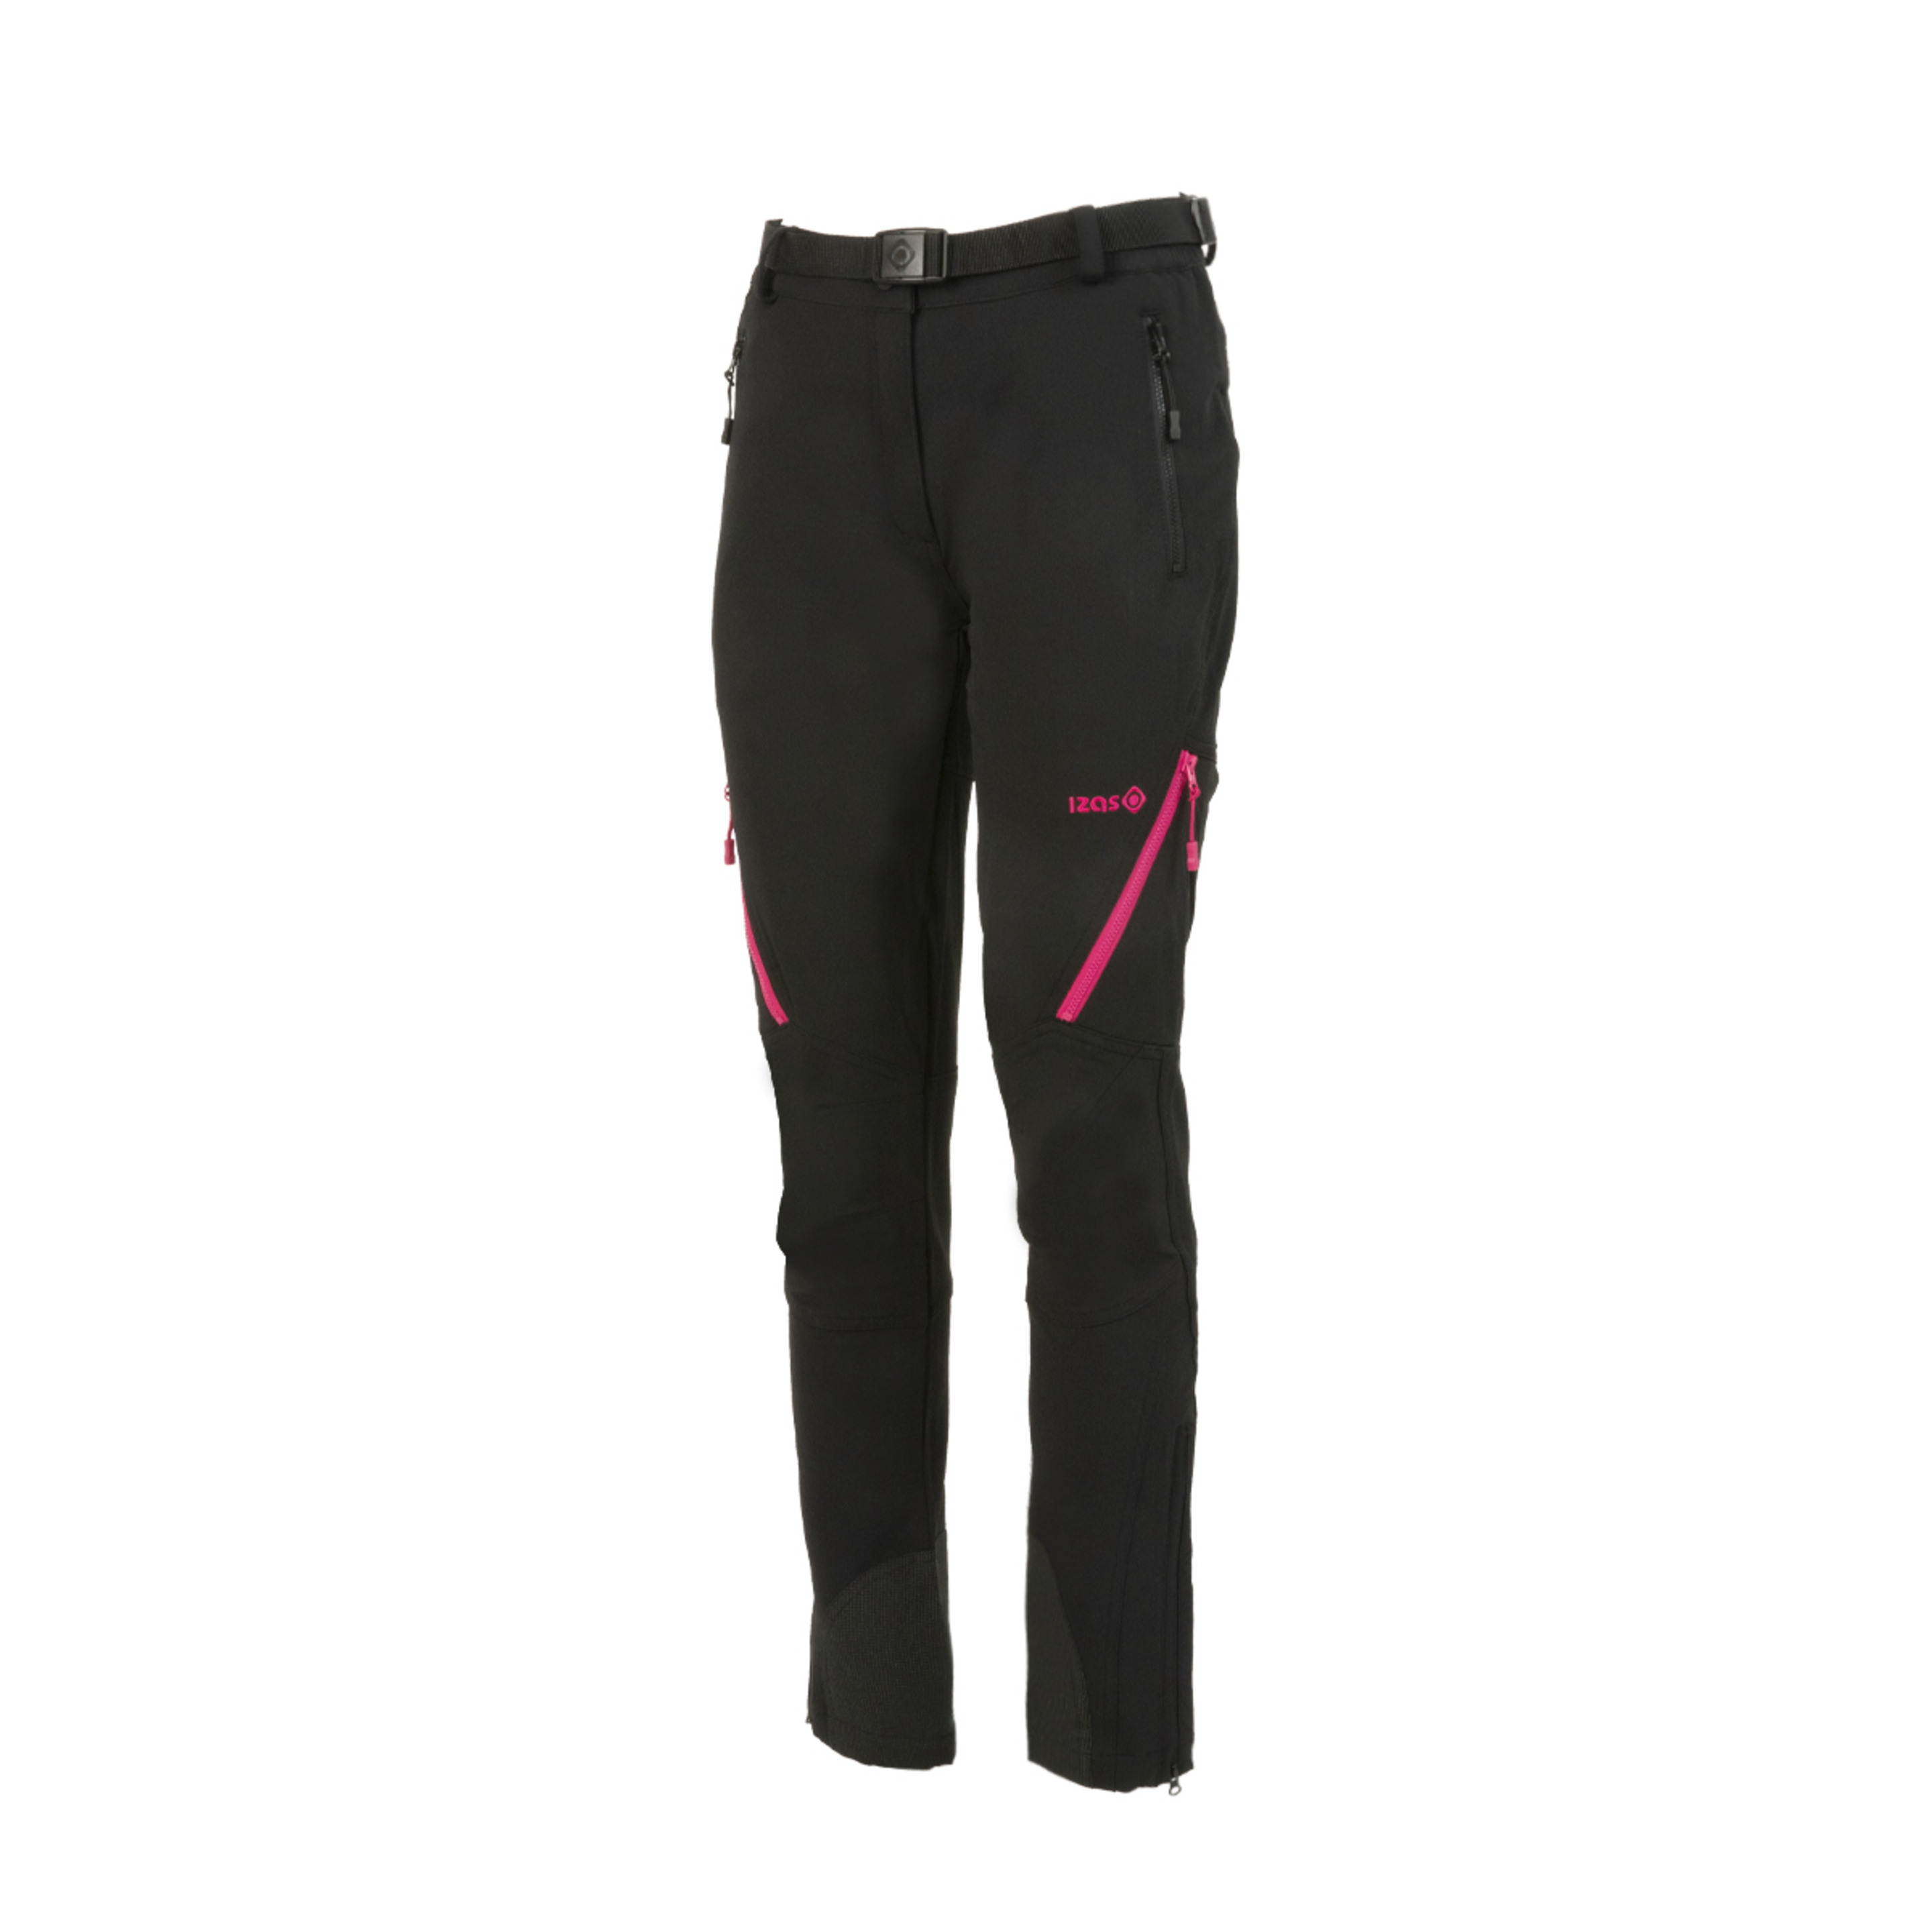 Pantalón De Trekking Con Patrón Regular Fit Y Bajo Ajustable Izas Agon W - negro-rosa - 